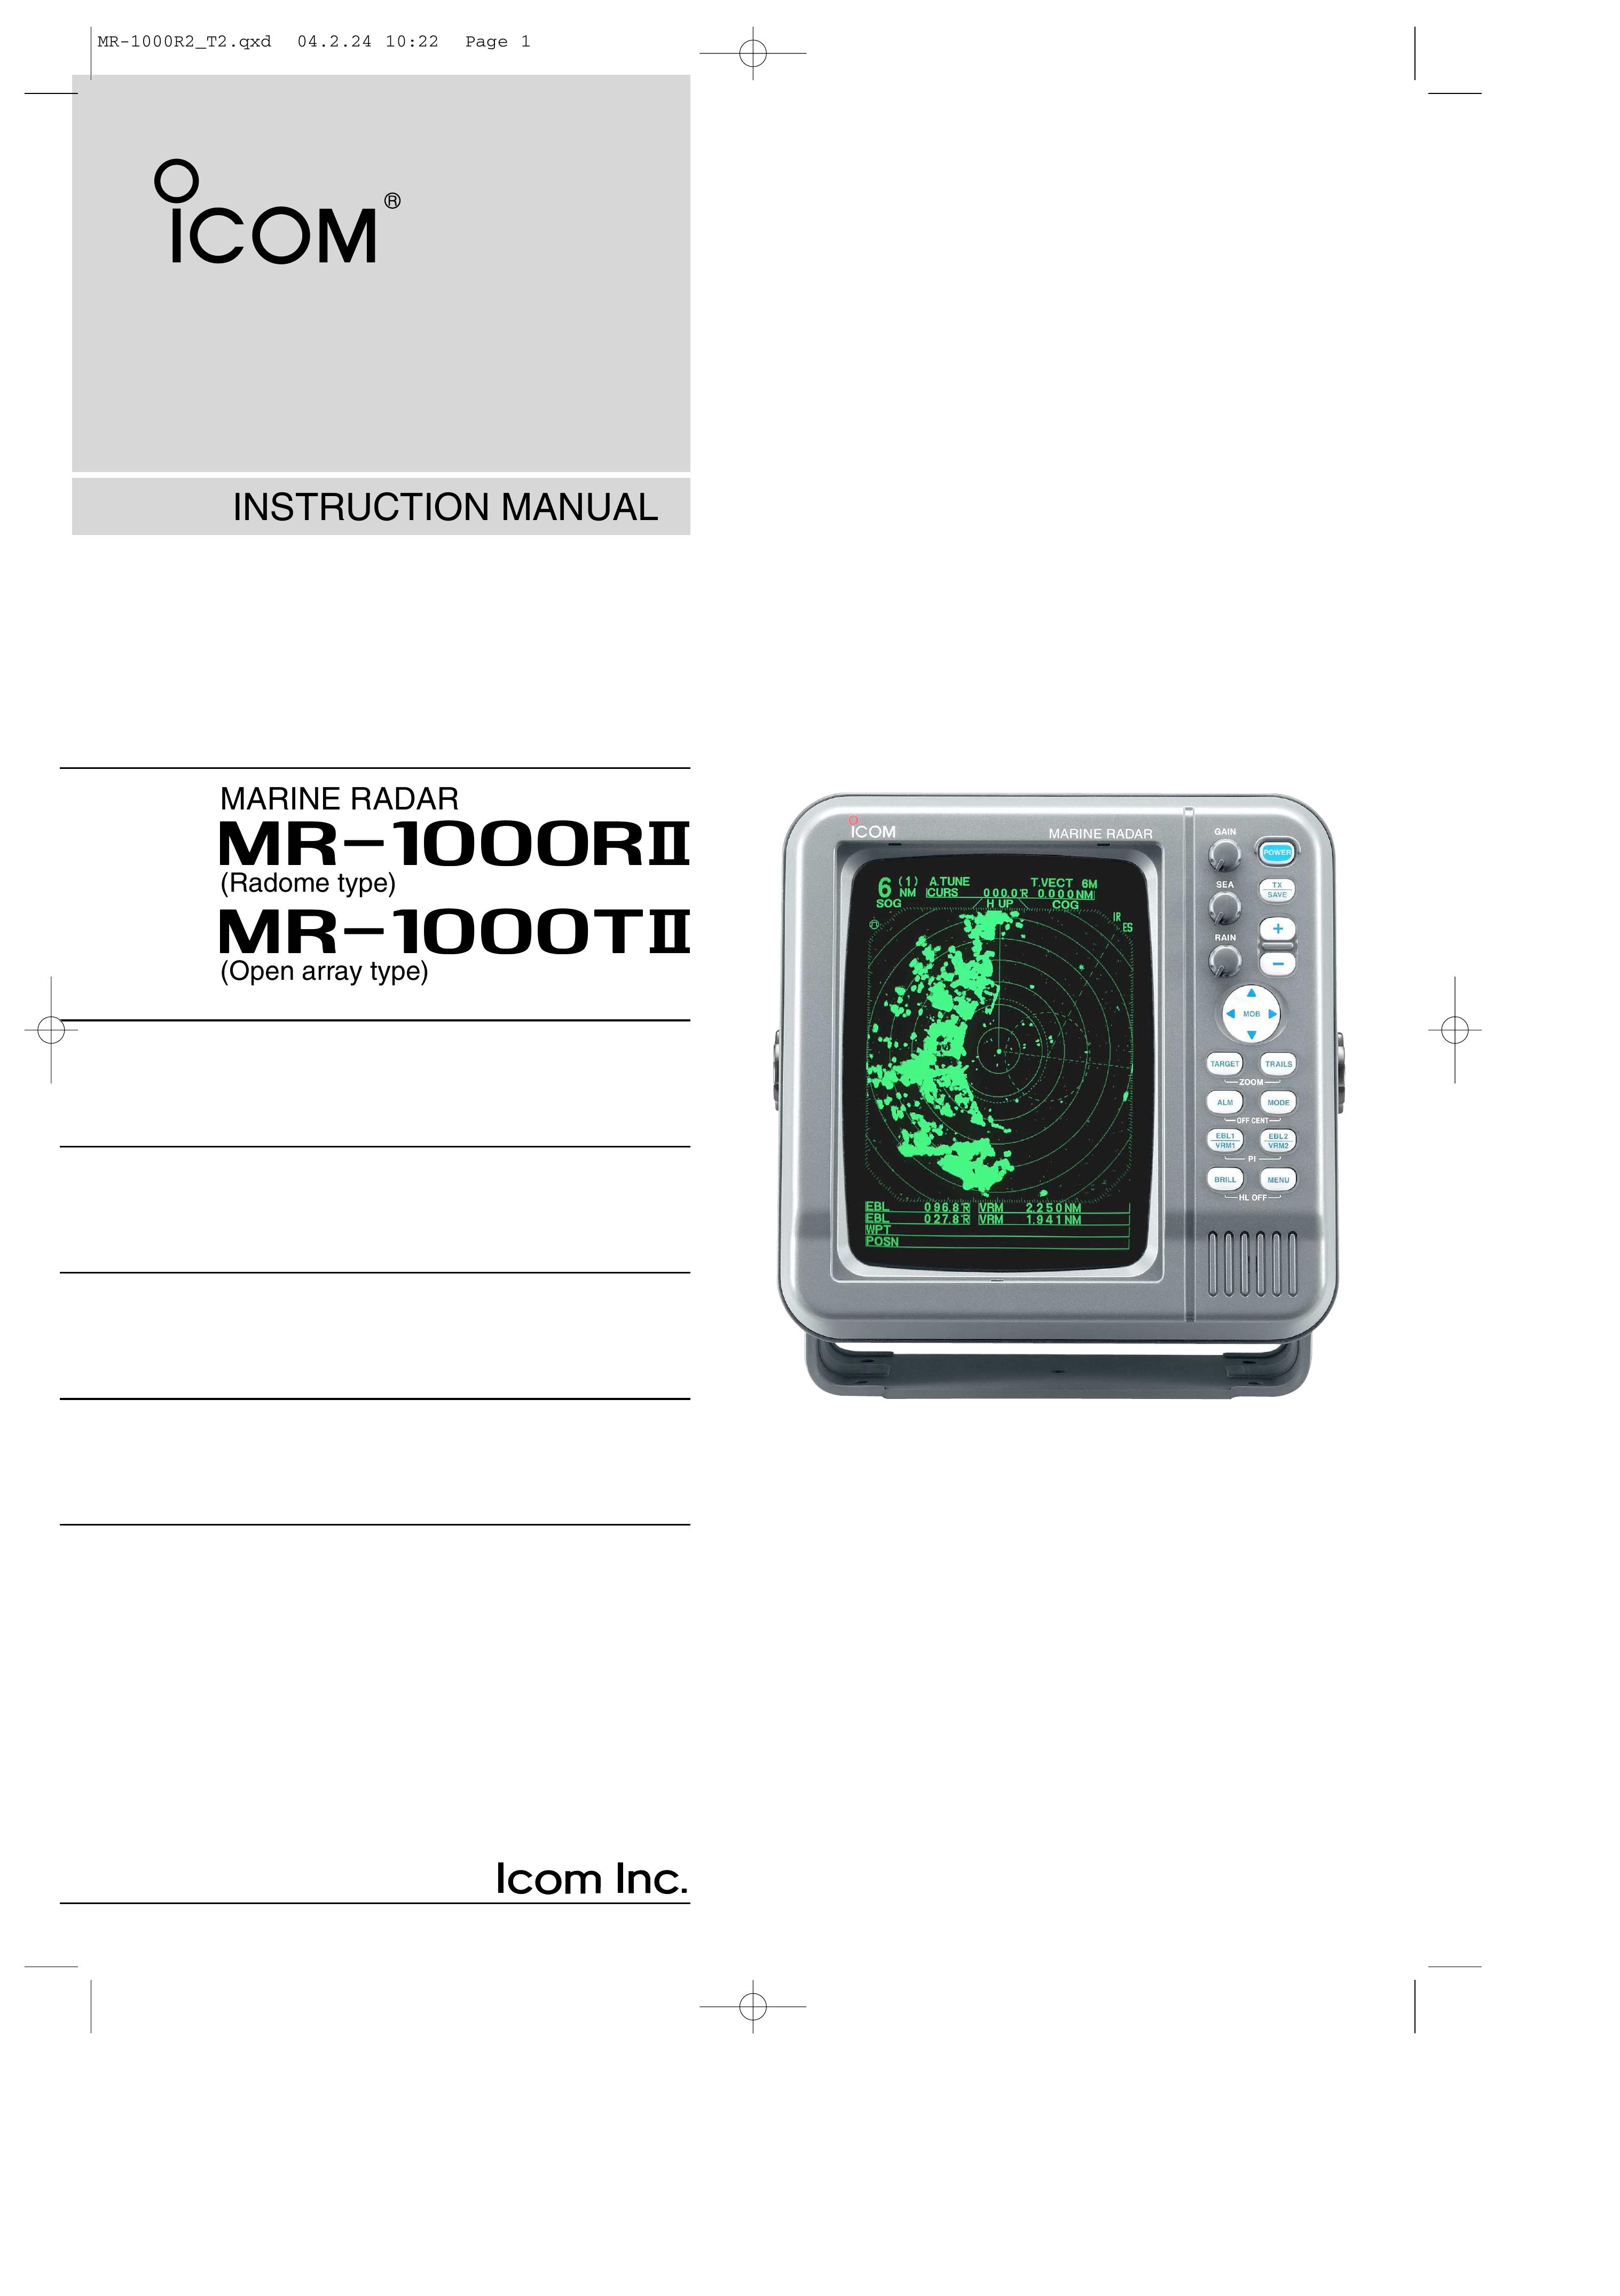 Icom EX-2714 Fish Finder User Manual